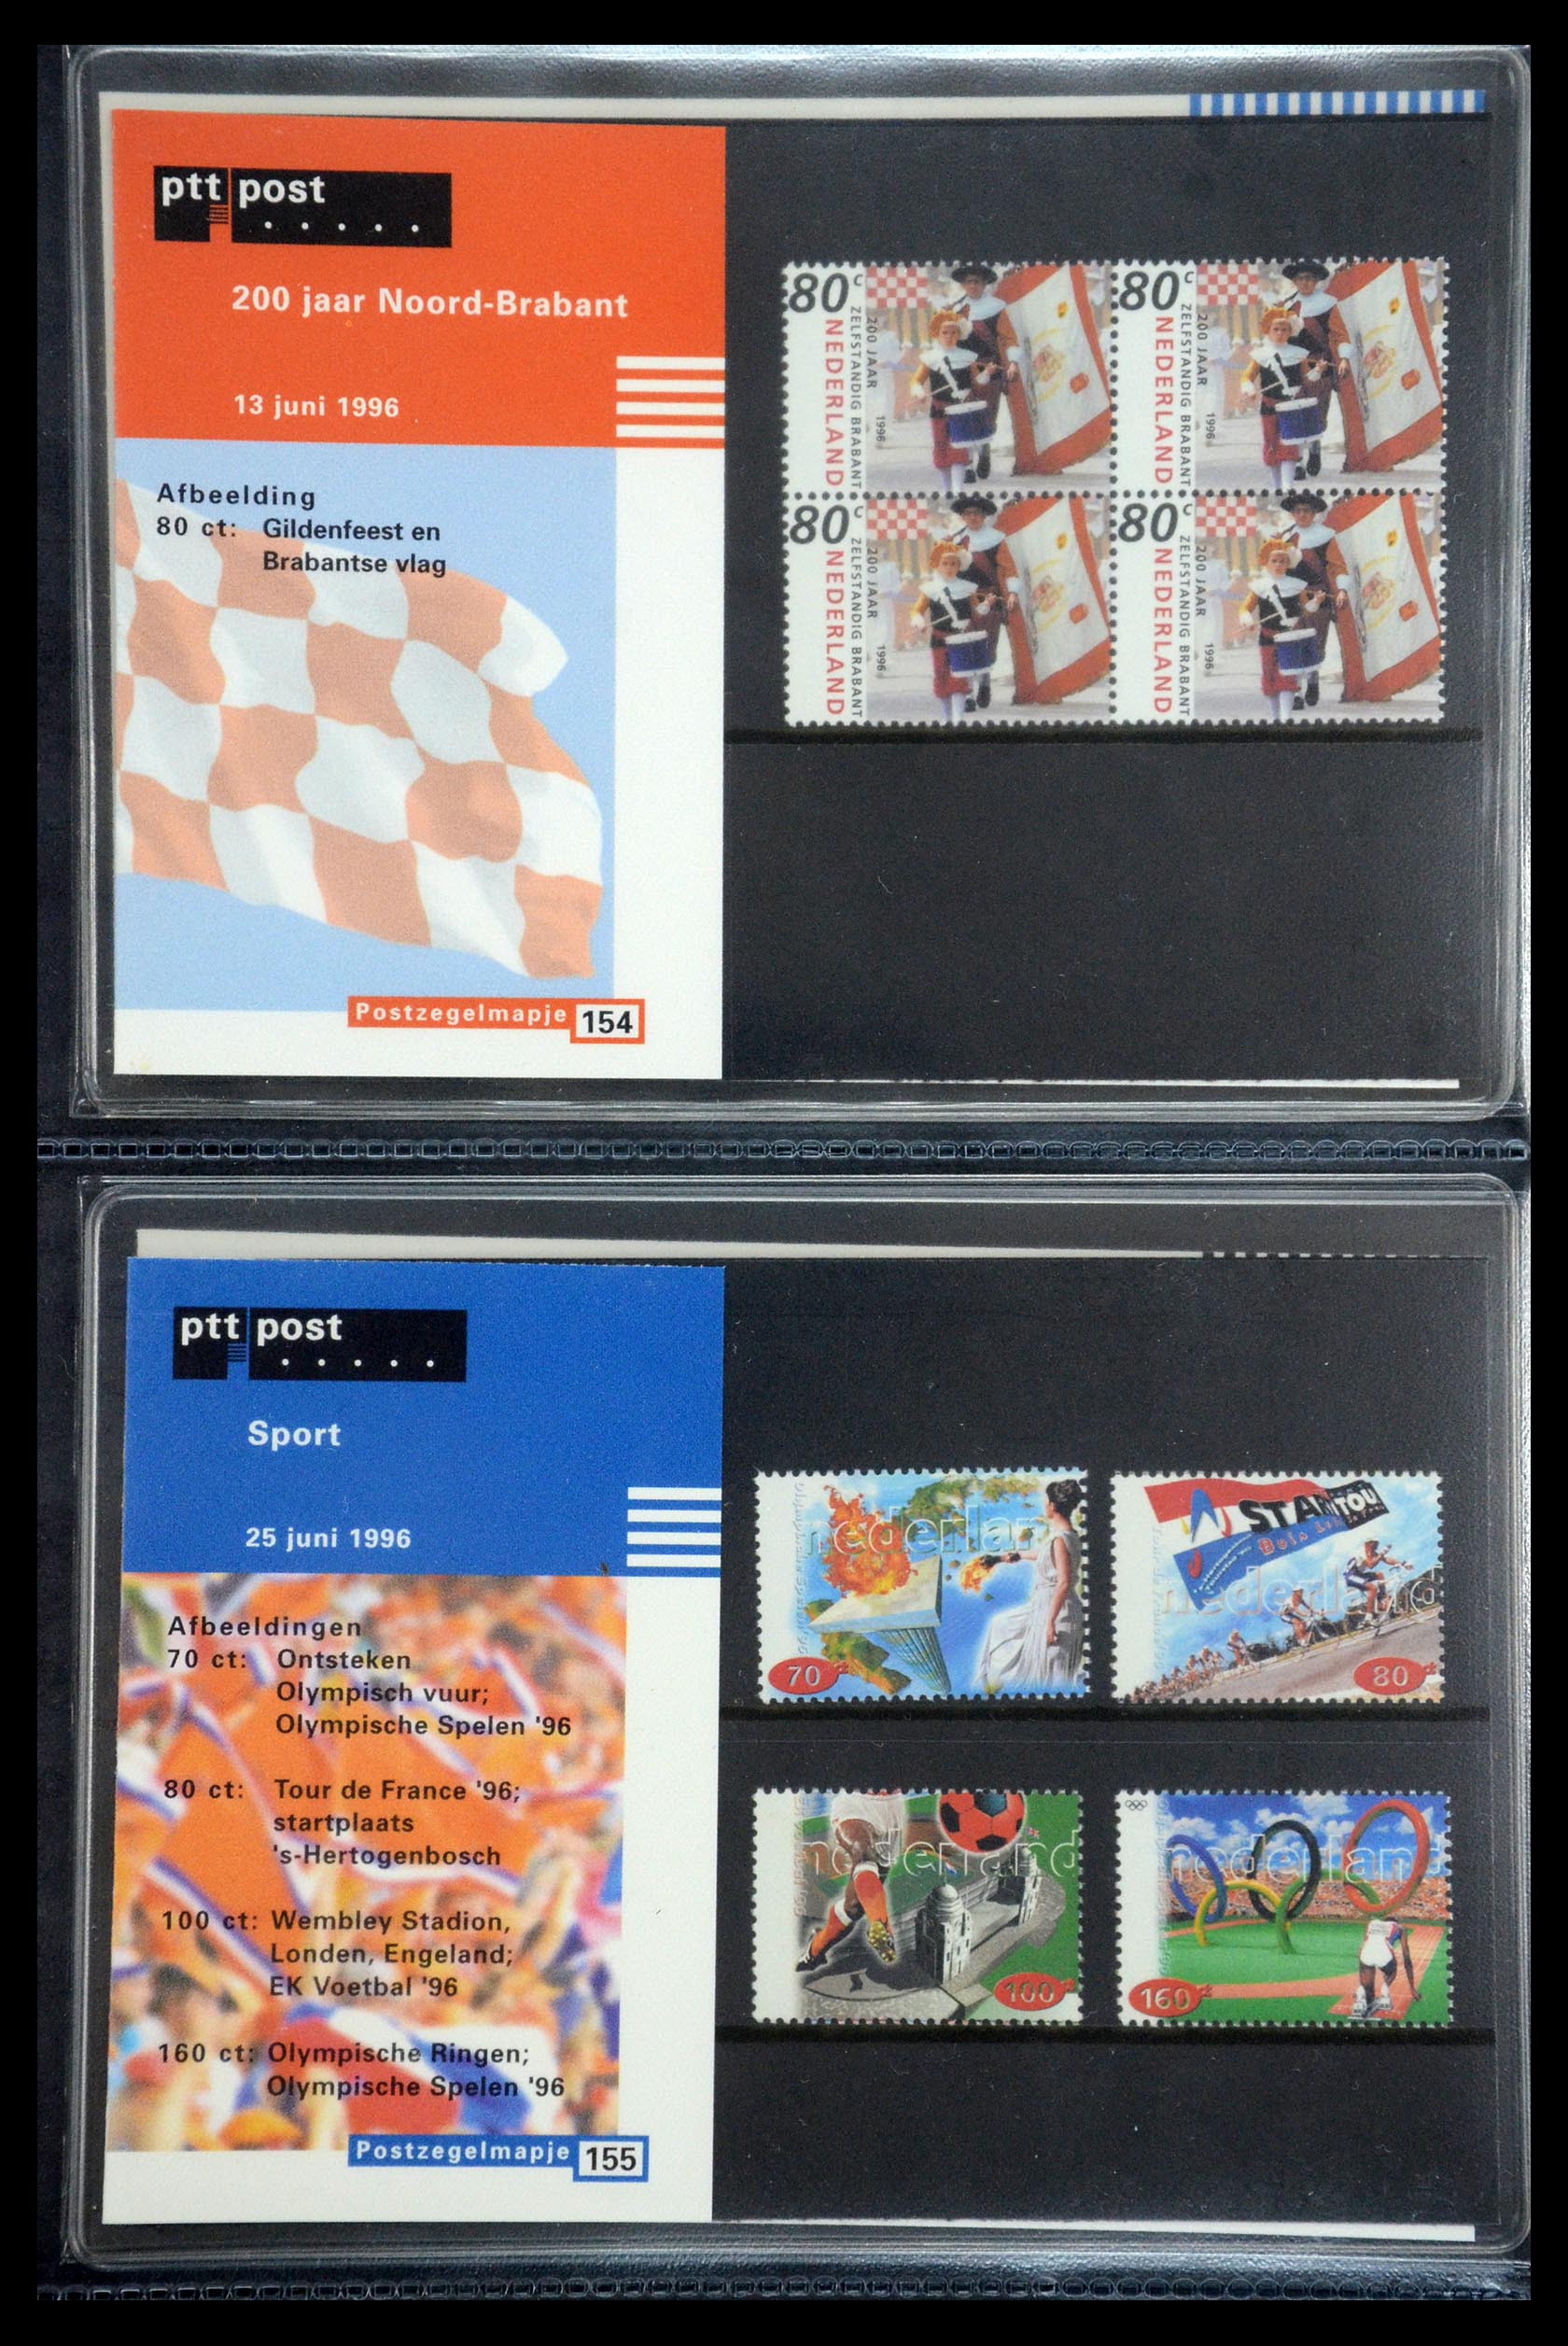 35187 079 - Stamp Collection 35187 Netherlands PTT presentation packs 1982-2019!